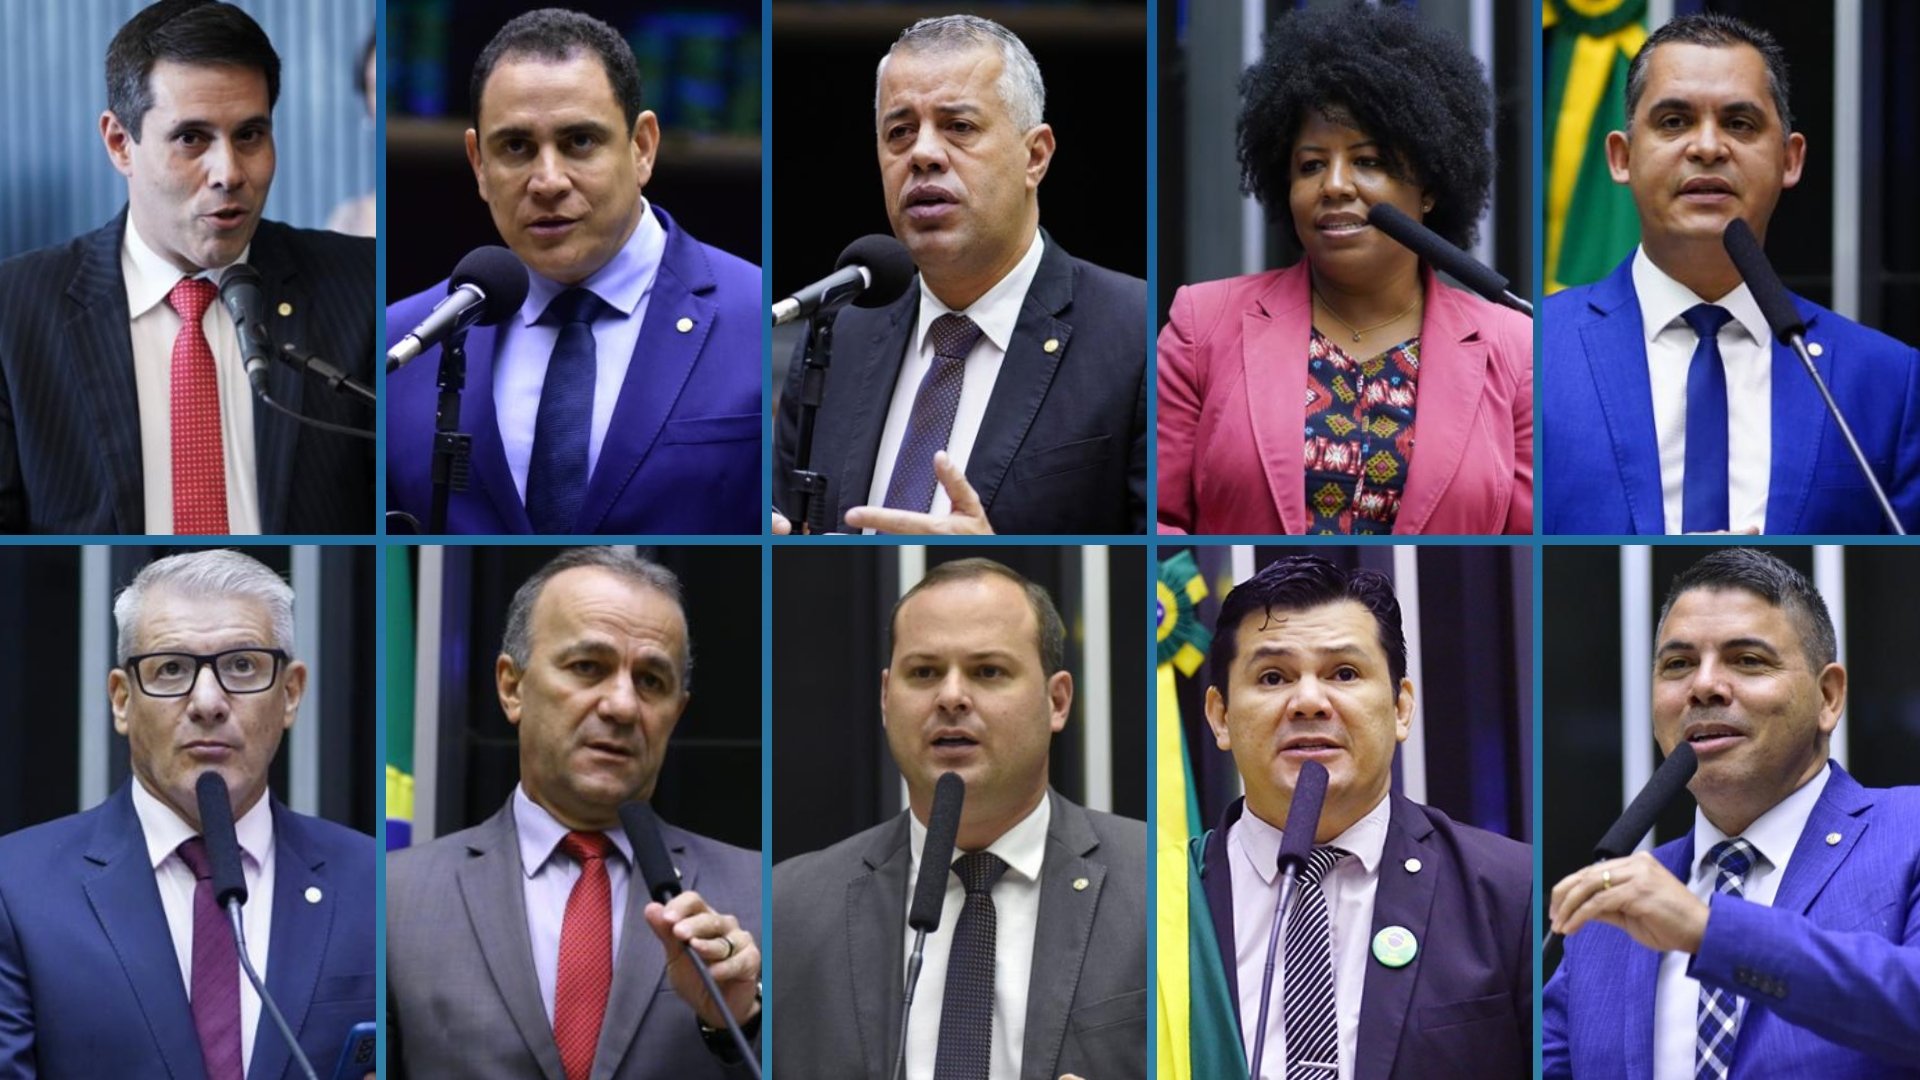 Dos dez deputados federais do Espírito Santo, sete estavam presentes na sessão da Câmara dos Deputados que aprovou a proposta; texto ainda será votado no Senado